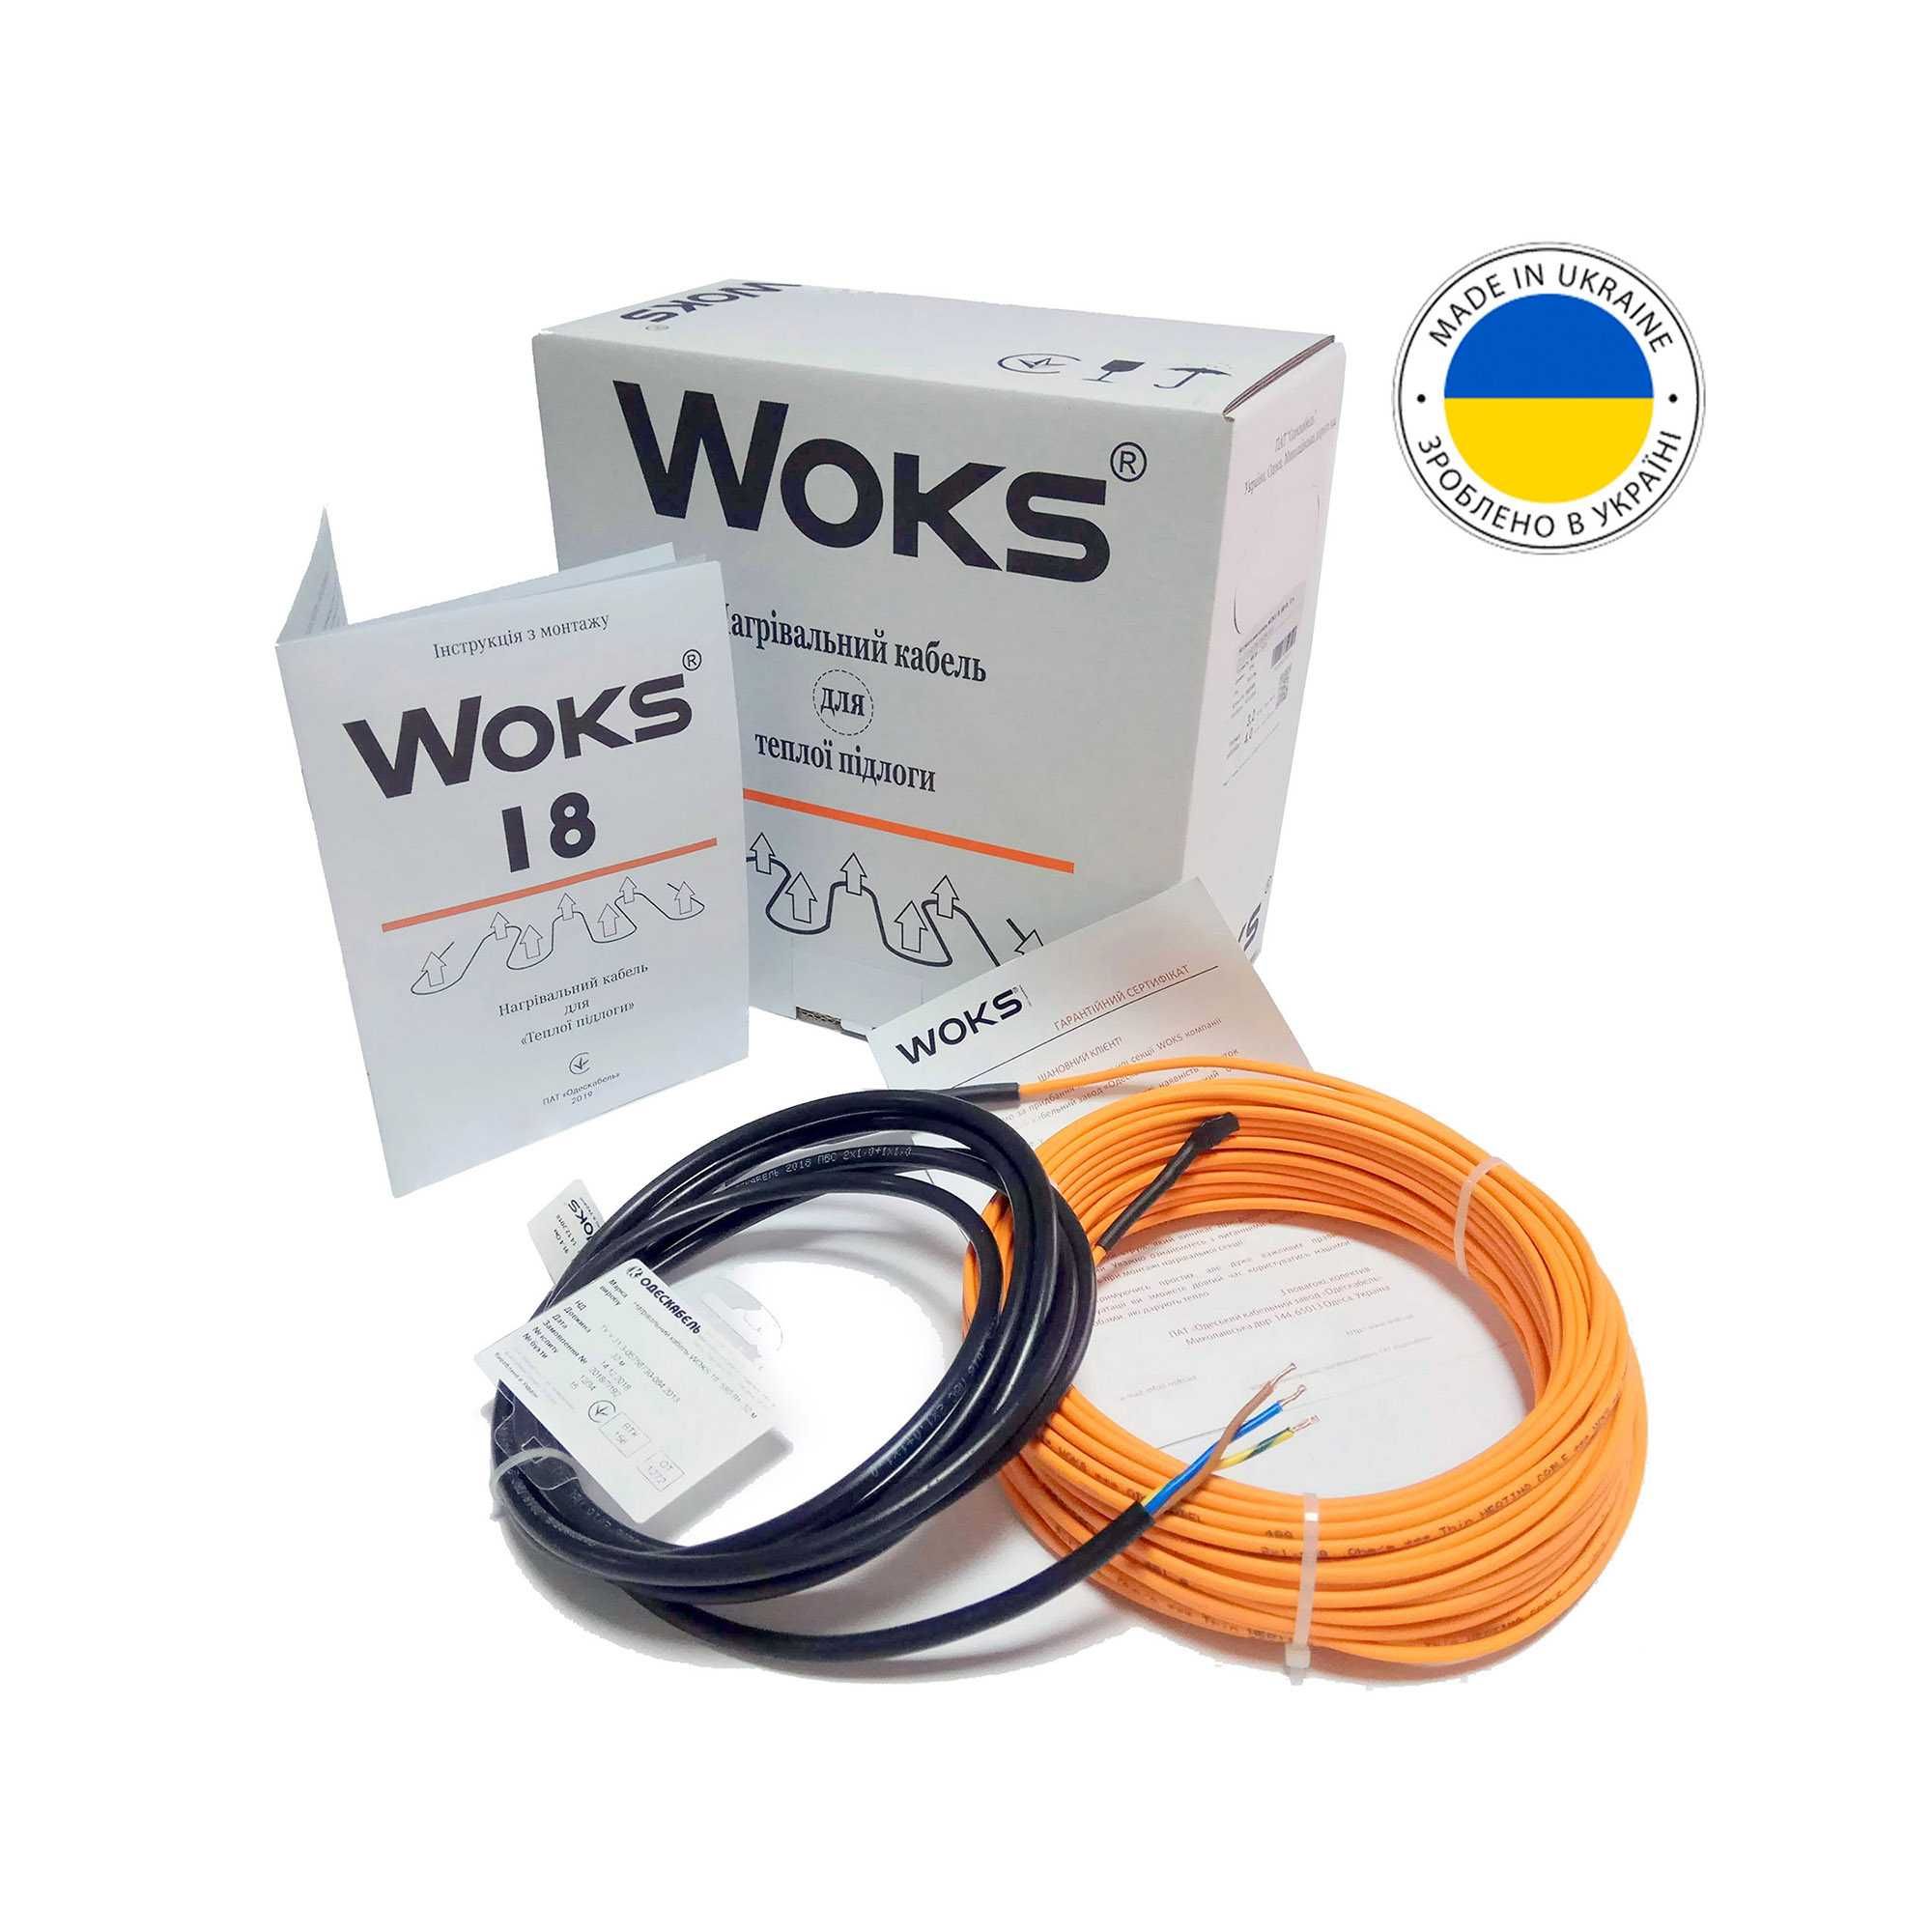 Нагревательный кабель Woks 18 (Украина). Теплый пол под плитку